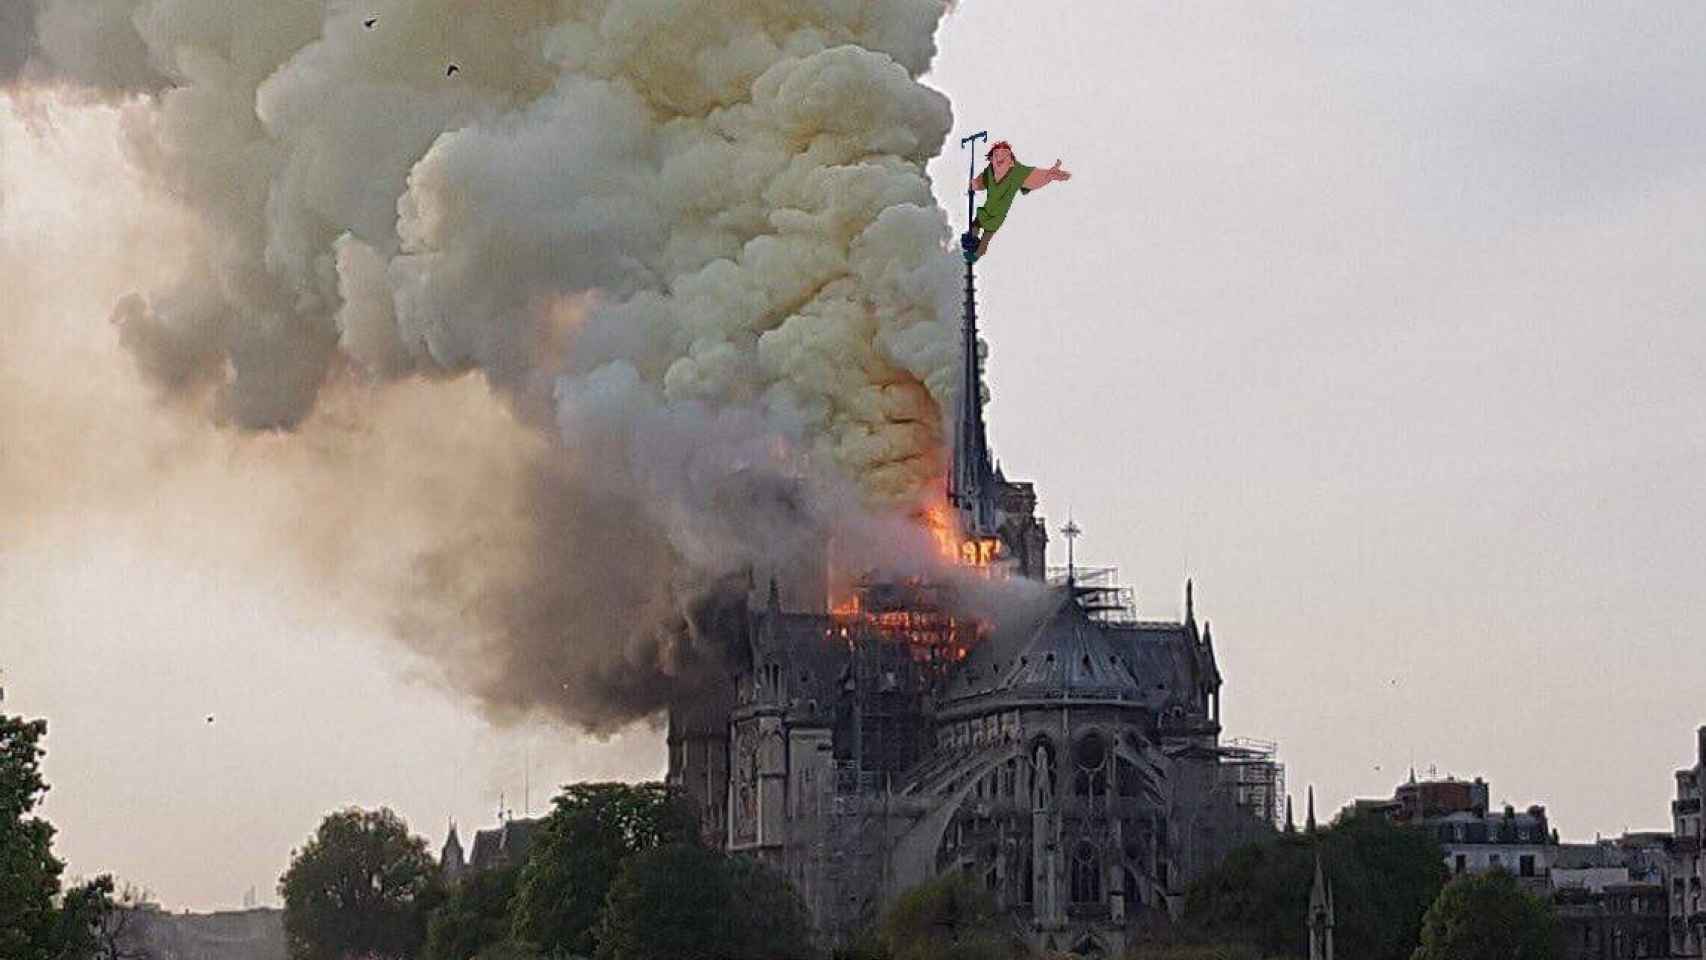 Quasimodo subido a la aguja de la catedral parisina mientras ocurre el incendio.